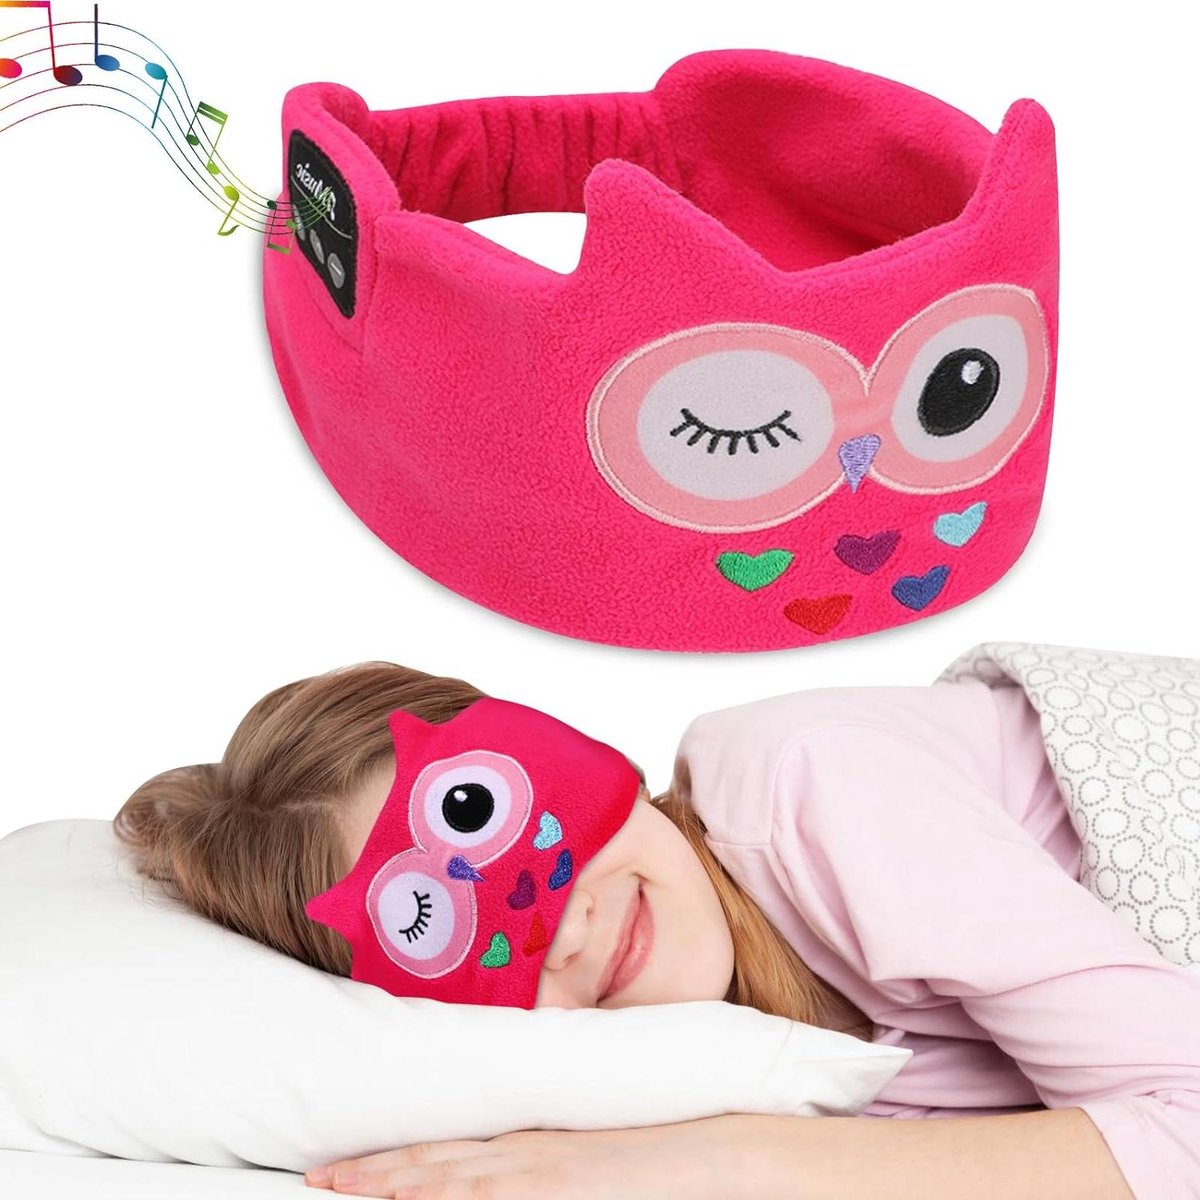 Bluetooth Slaapmasker - Hoofdband Audio met Koptelefoon Microfoon - Verduisterende Nachtmasker - Hoofdtelefoon Muziekmasker voor Kinderen - Jongen Meisje Reizen Slapen Dutjes Meditatie